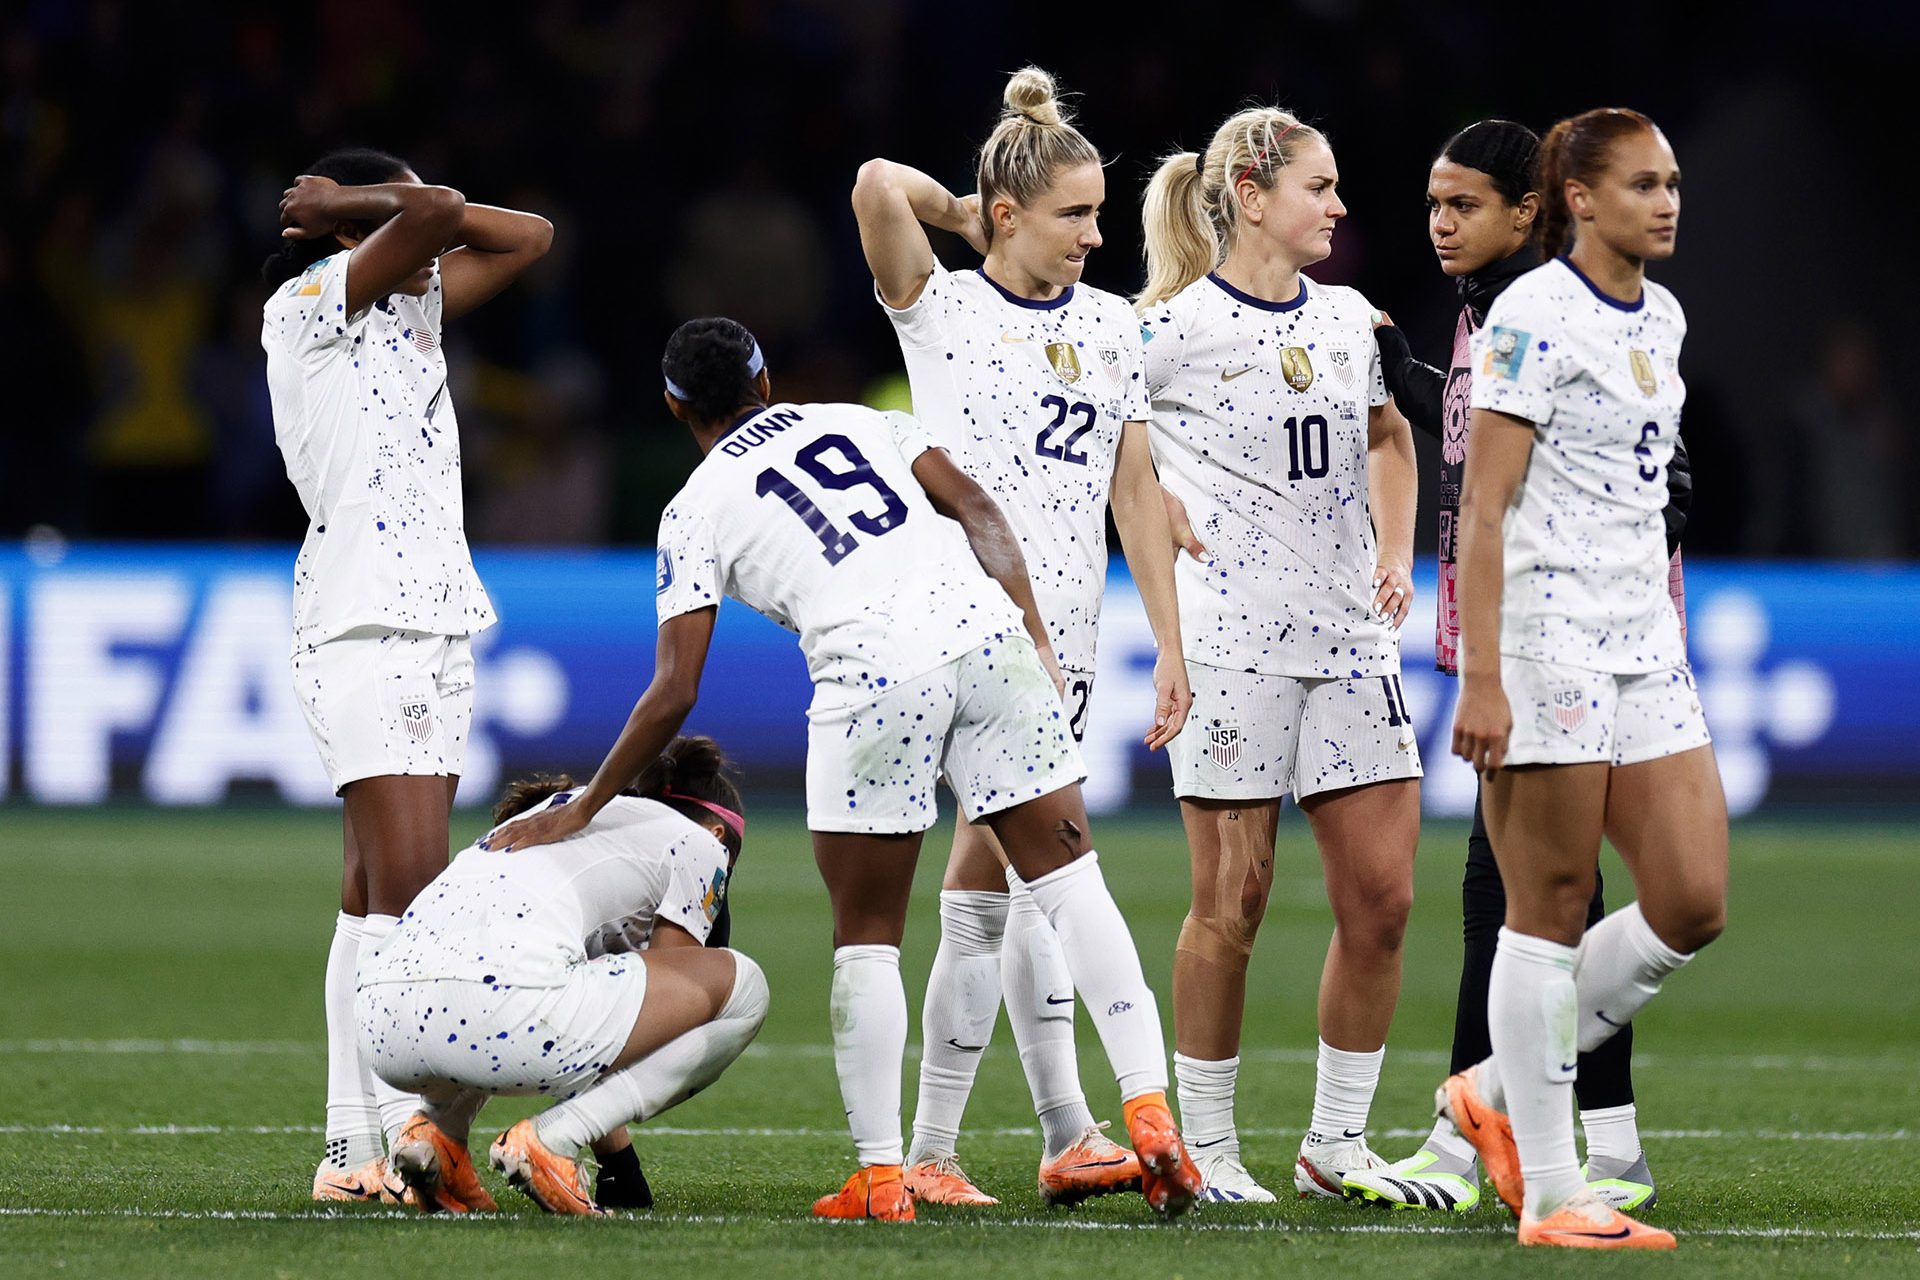 Fußball: USA bei Frauen-Weltmeisterschaft im Achtelfinale ausgeschieden